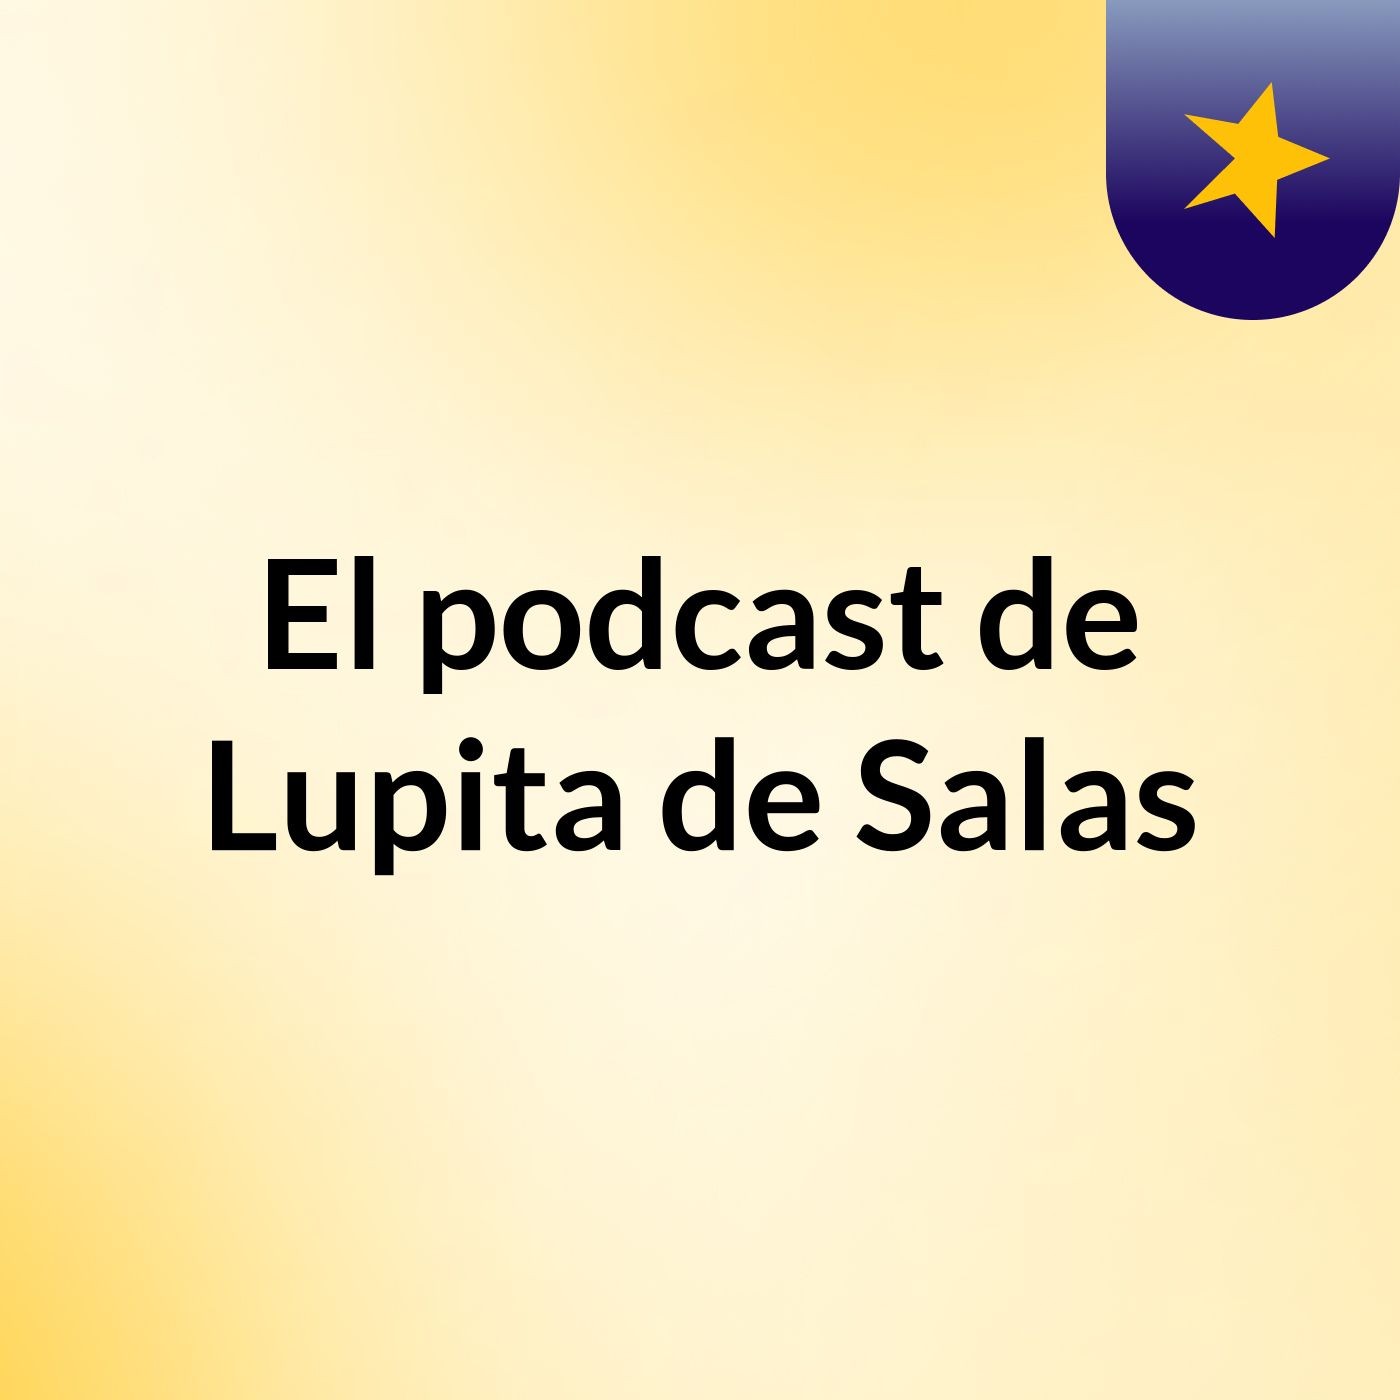 El podcast de Lupita de Salas